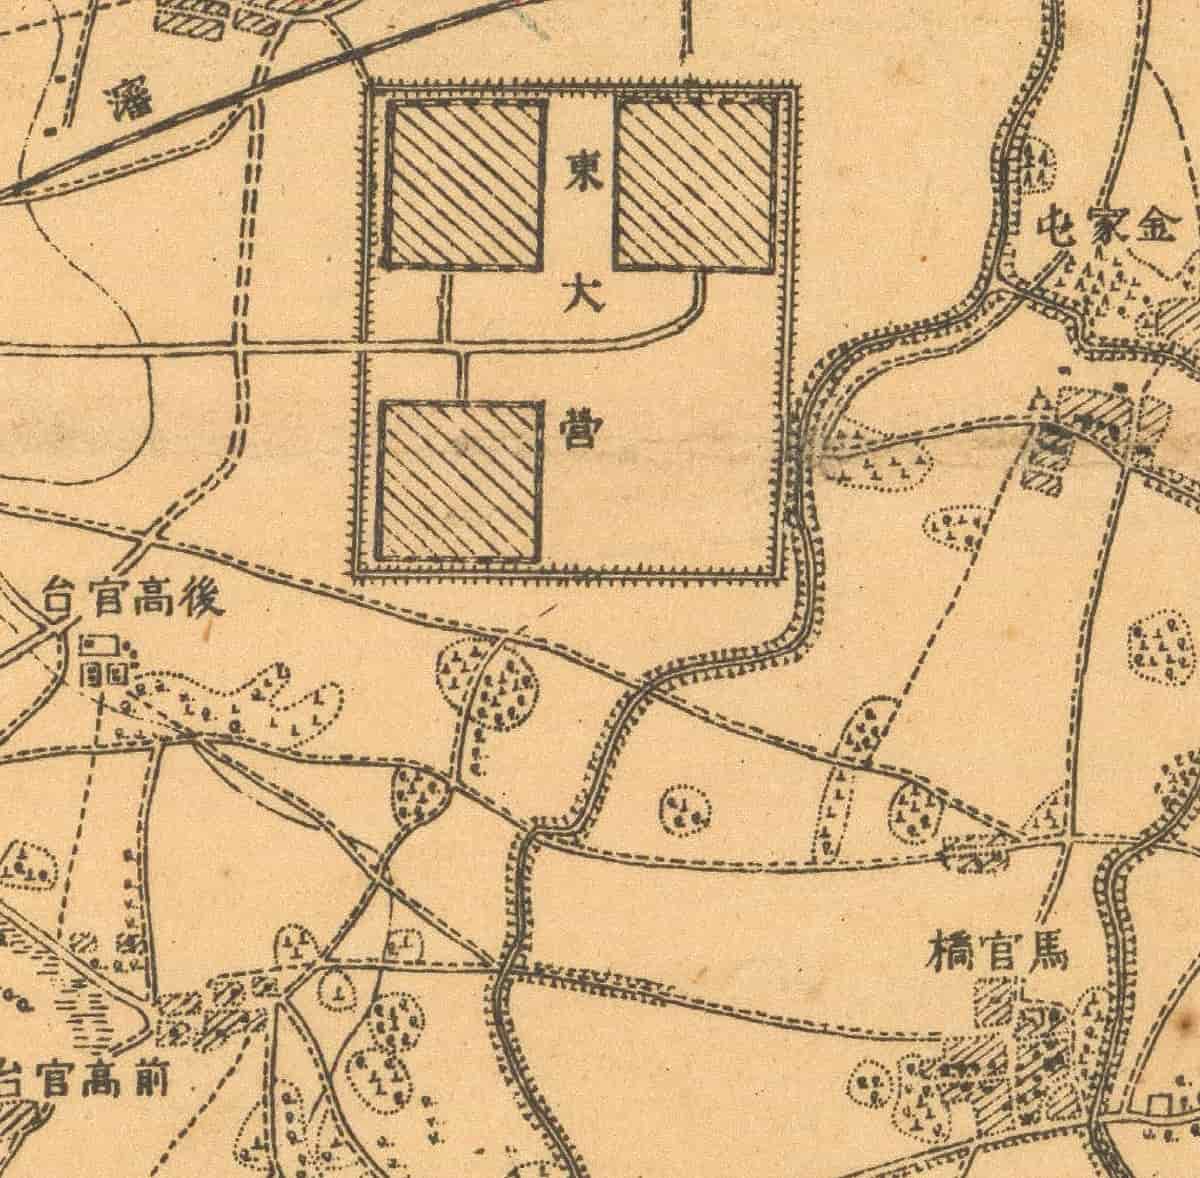 奉天近郊地图2.jpg